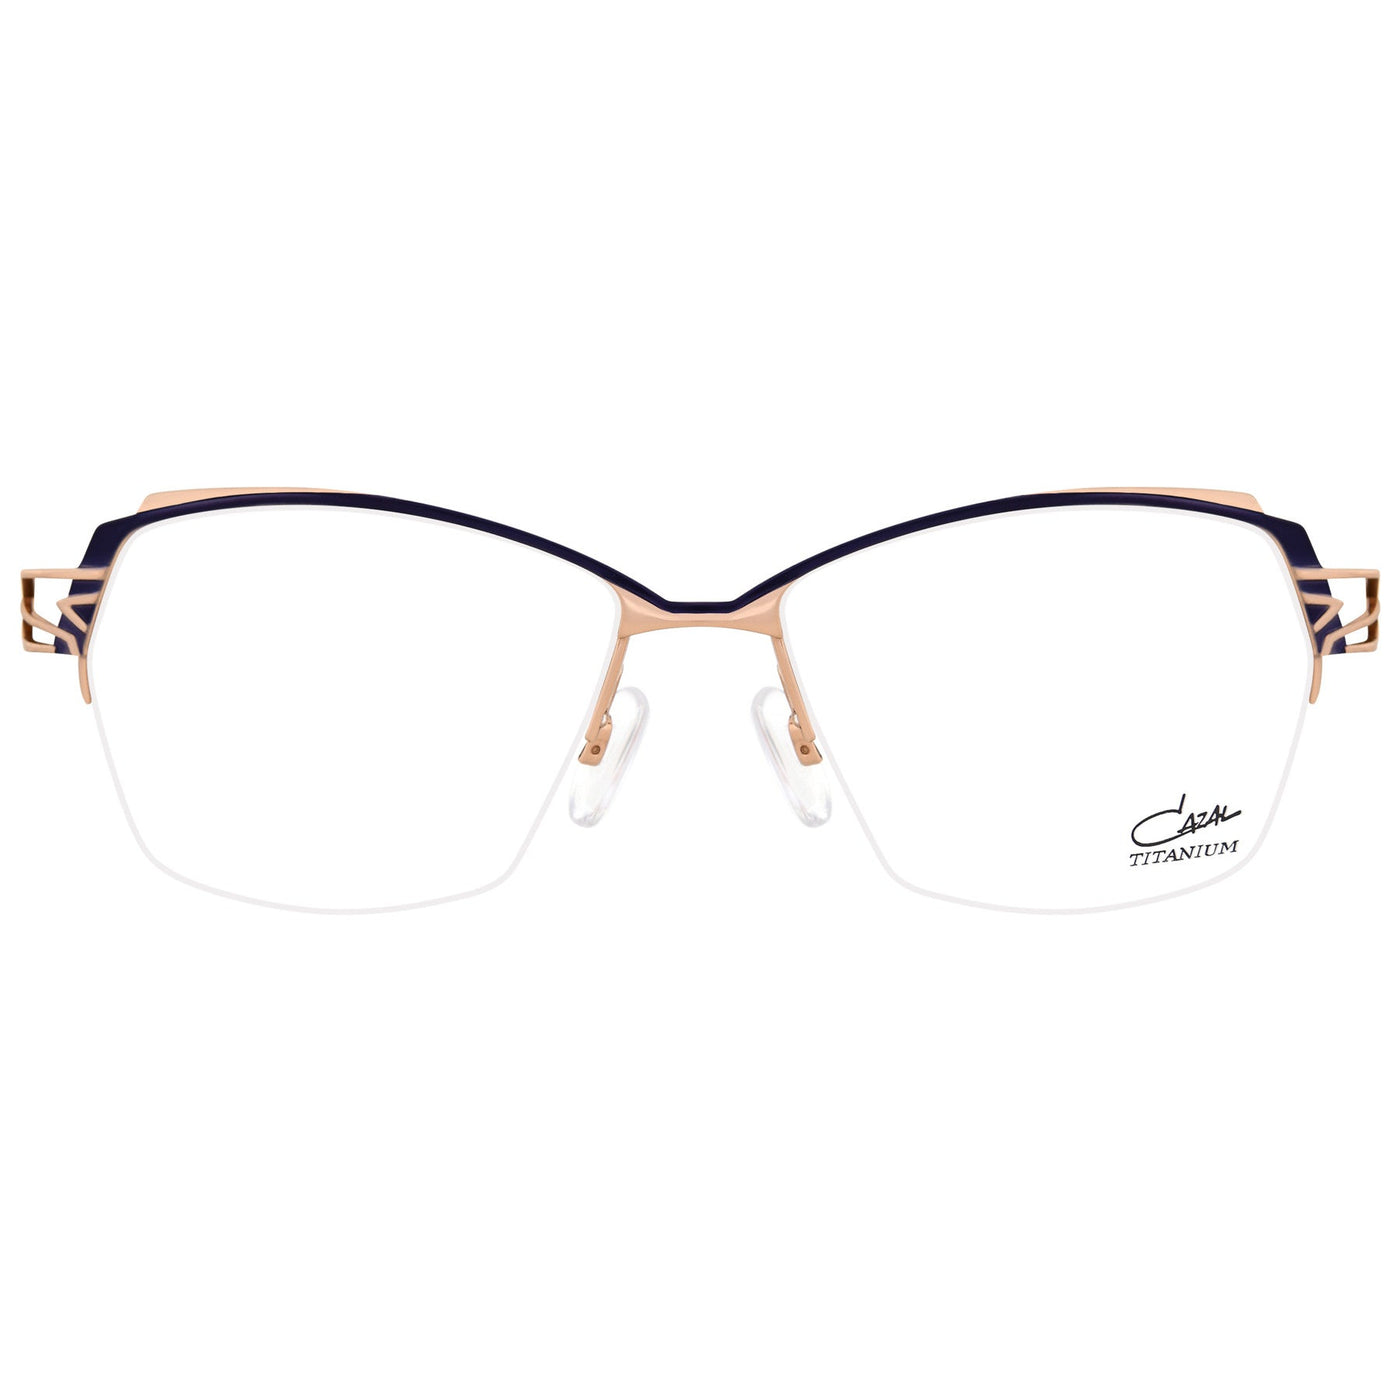 Cazal® 1280 CAZ 1280 004 52 - 004 Plum / Gold Eyeglasses